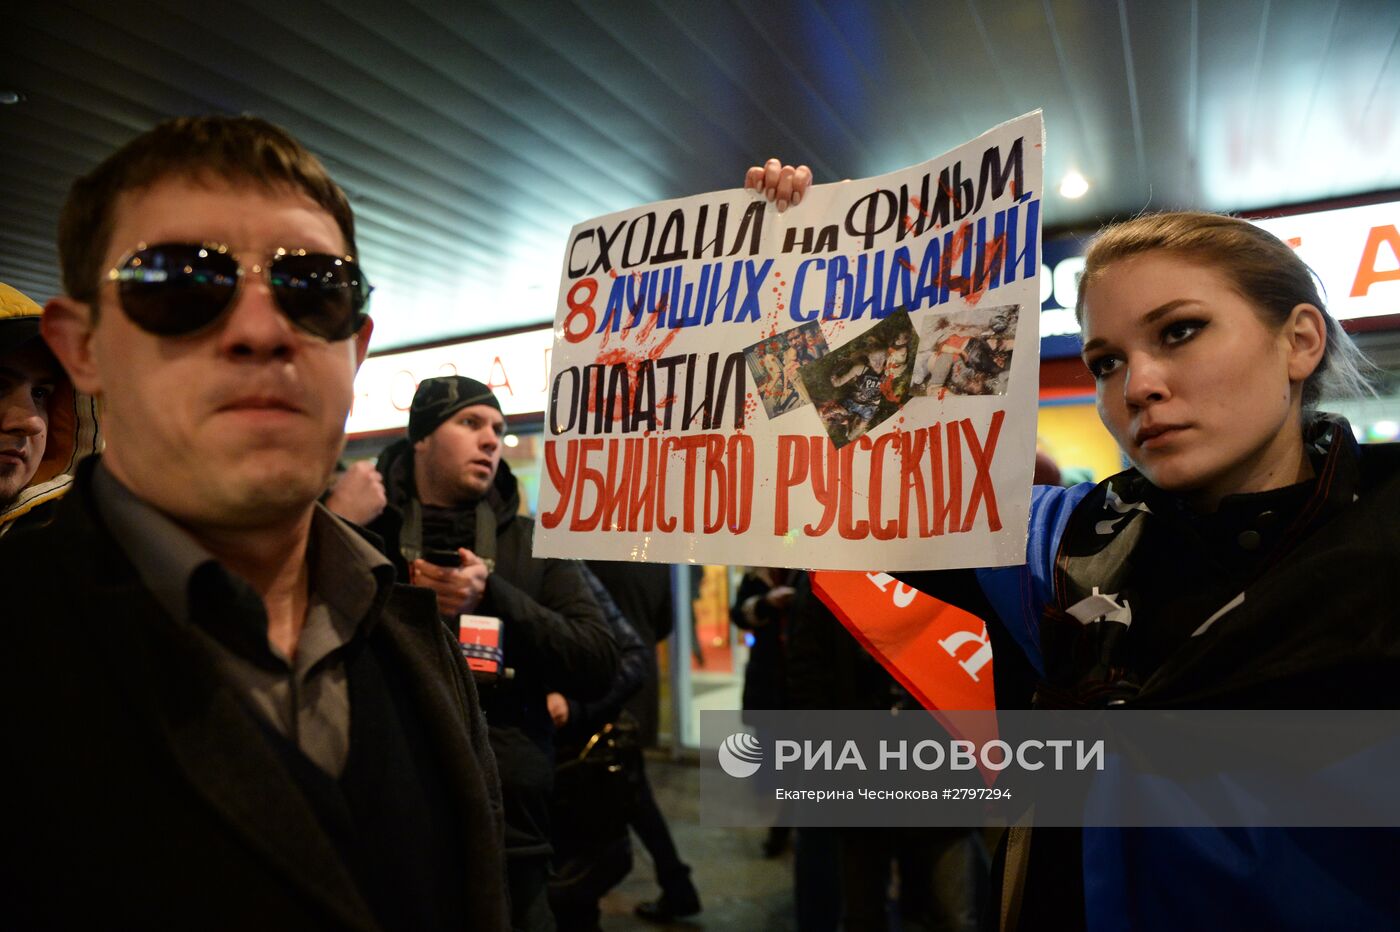 Акция протеста против показа фильма "8 лучших свиданий" в Москве